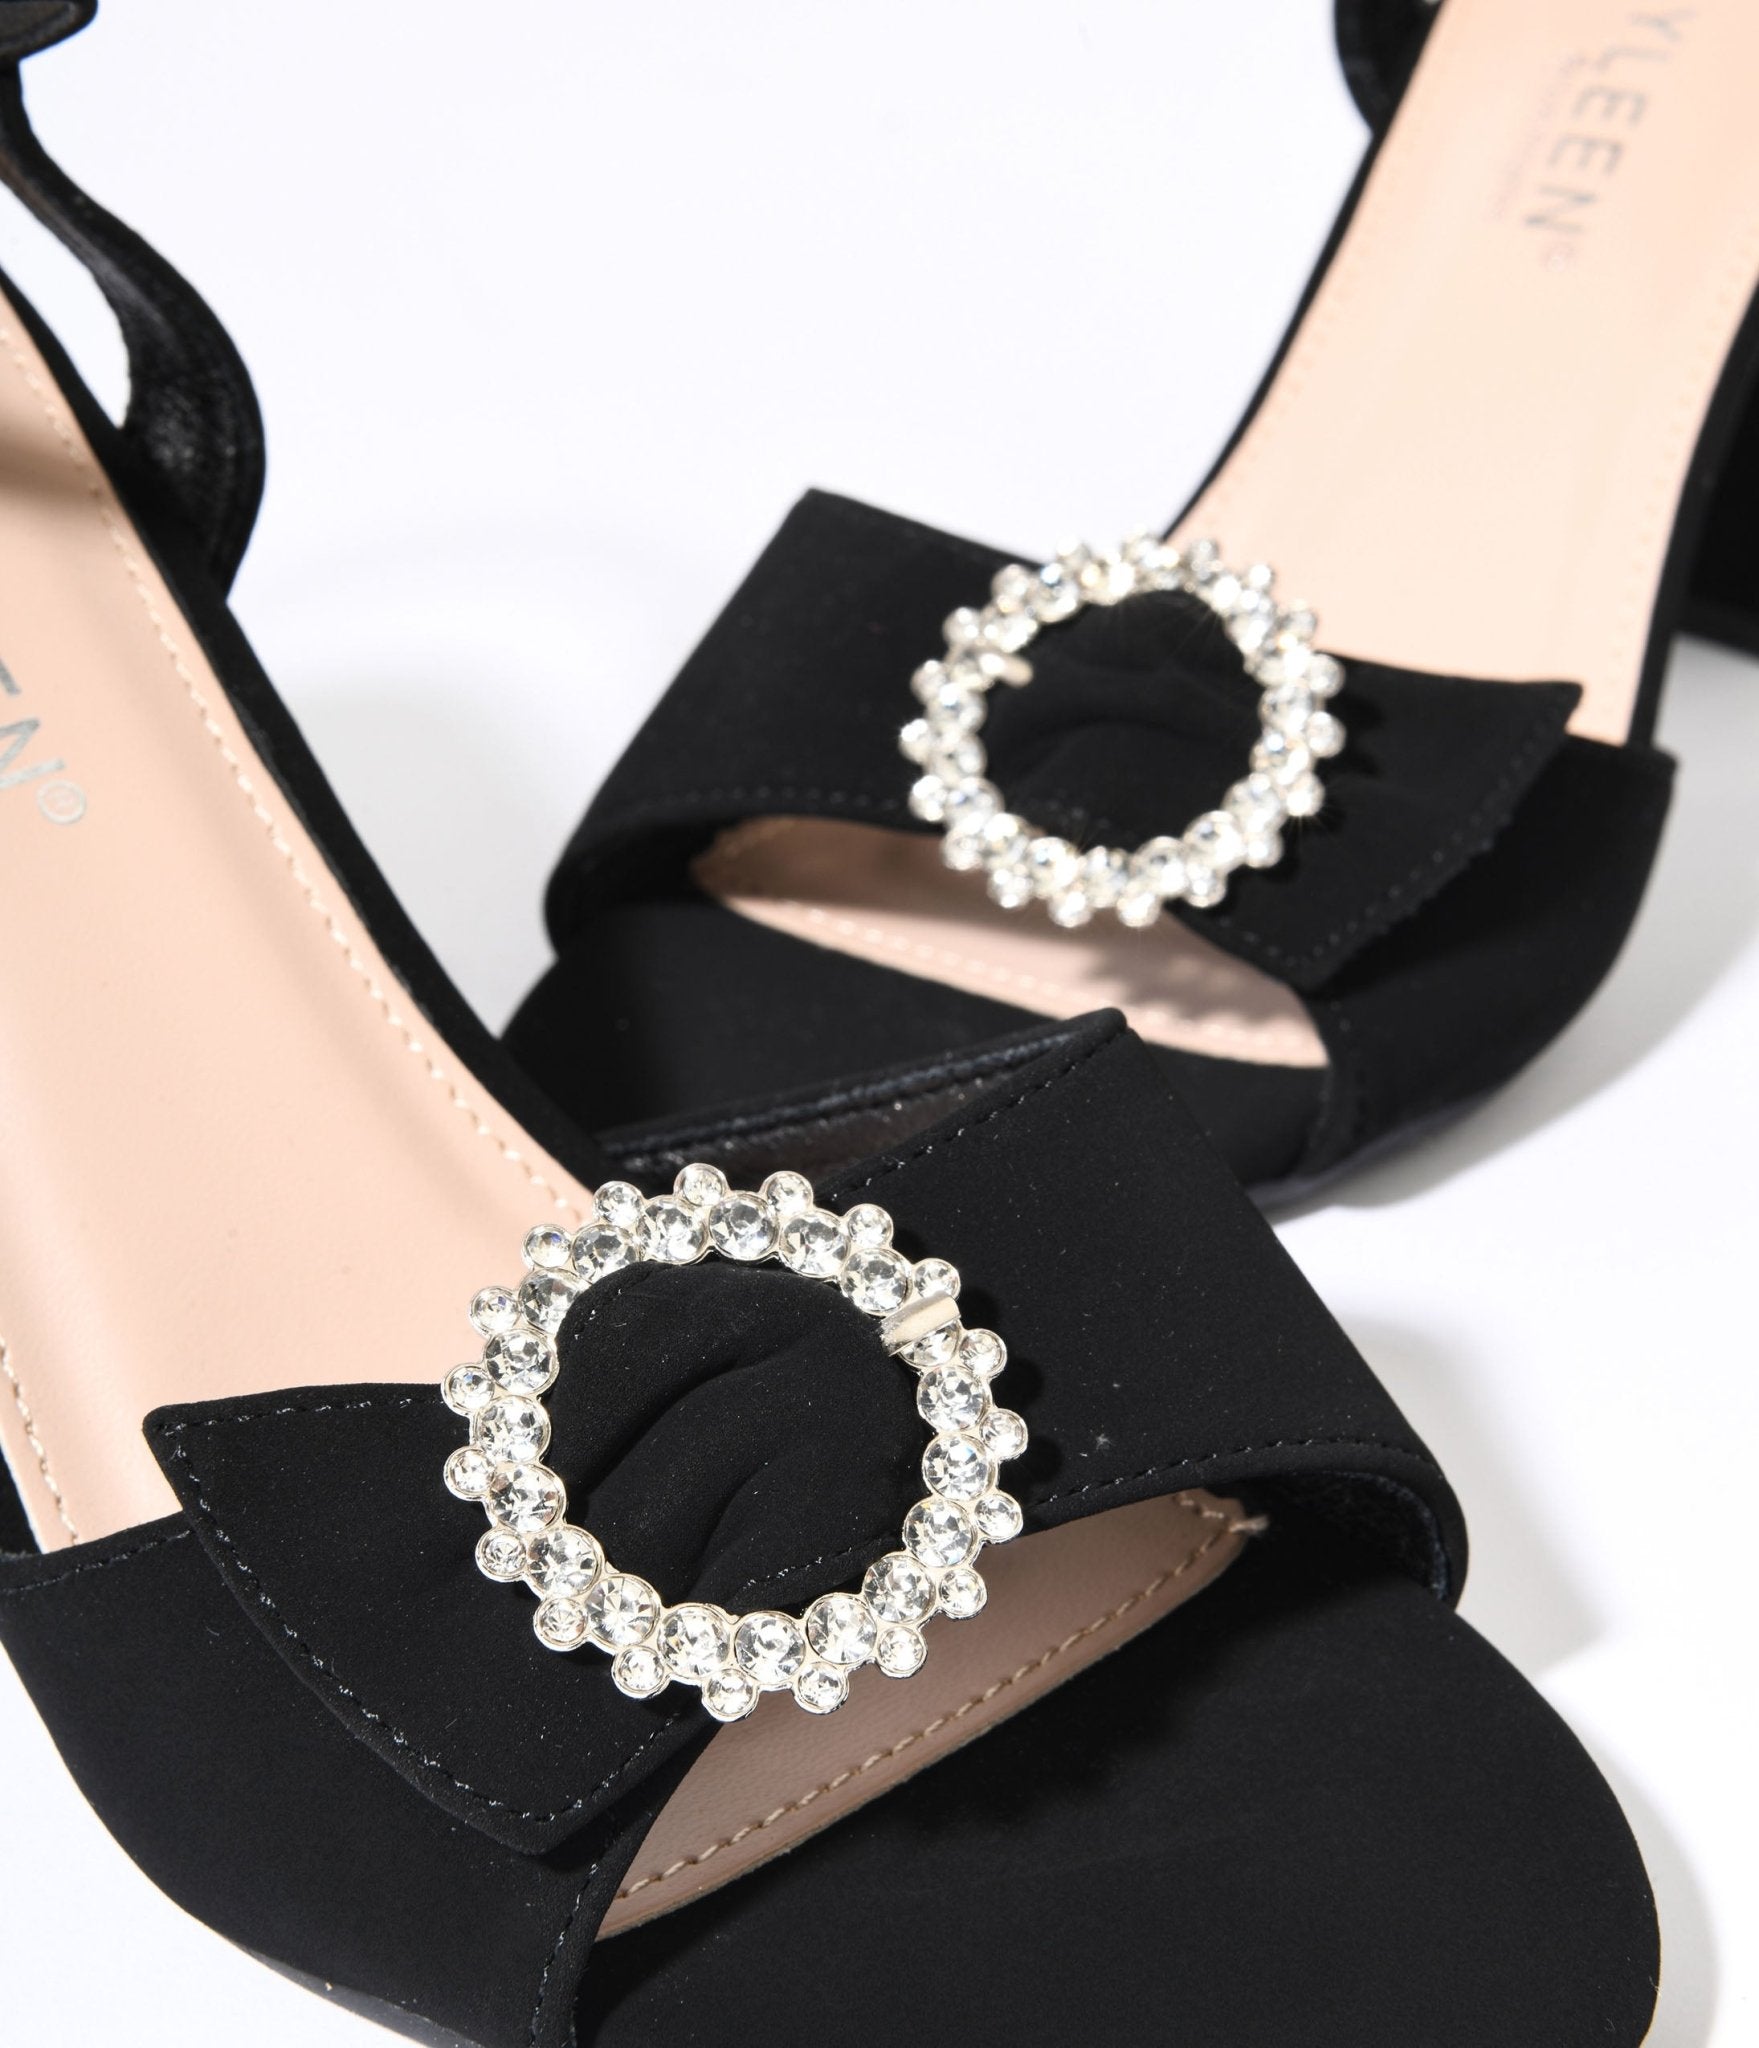 CHARLES & KEITH Suede Stilettos | Pumps heels stilettos, Black pumps heels, Black  shoes heels